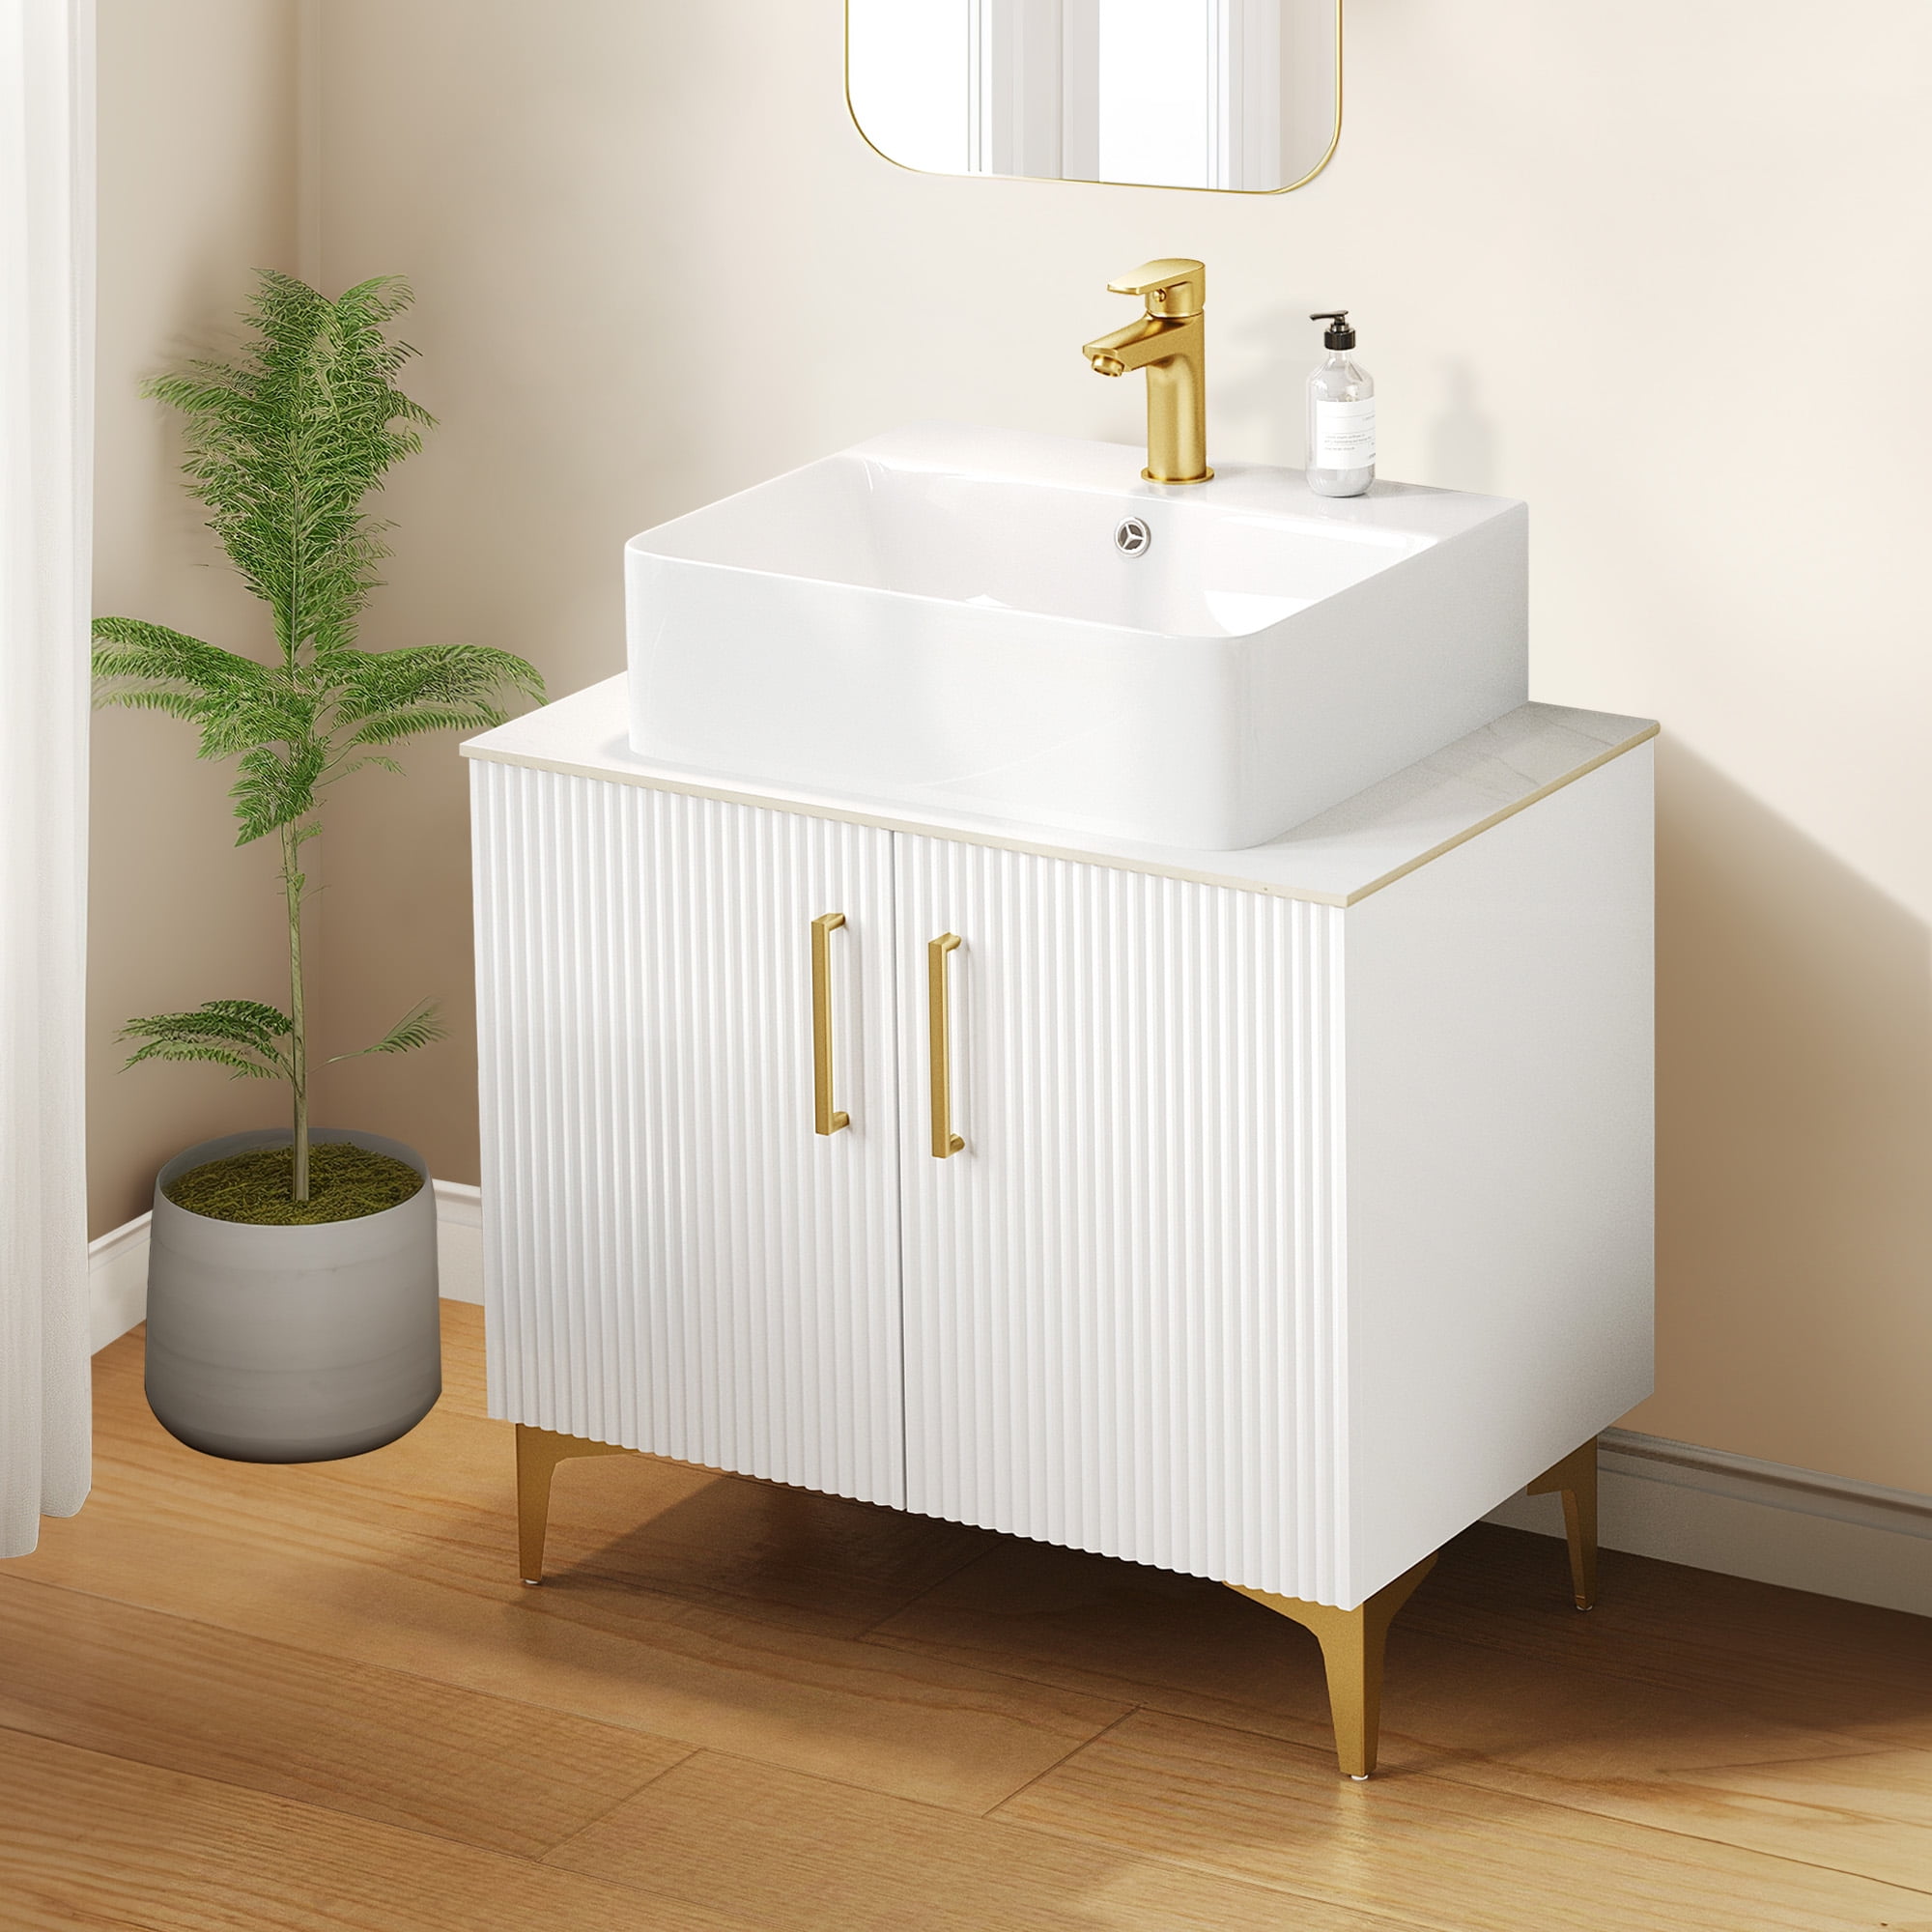 Dextrus Bathroom Vanity with Countertop Sink Combo 30 Inch, Mid-Century ...